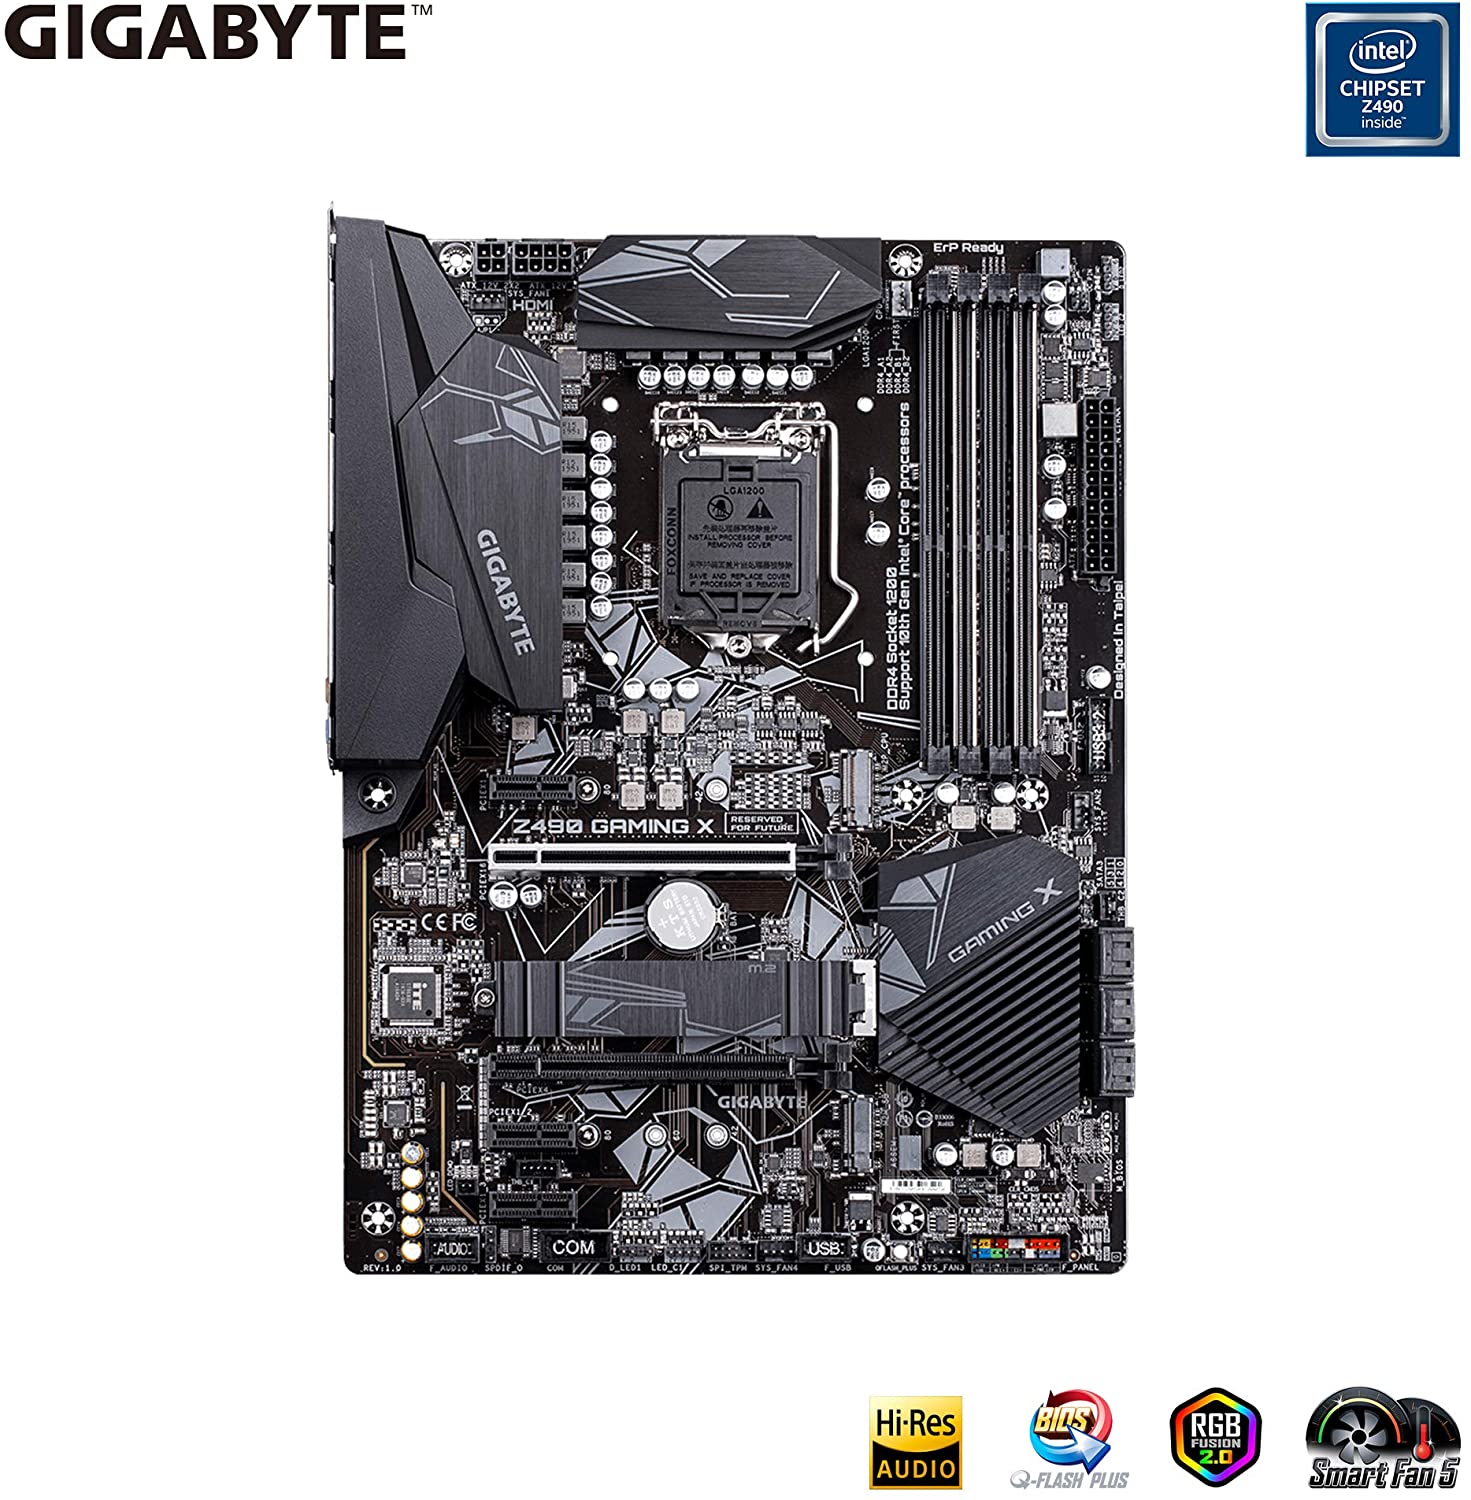 GIGABYTE Z490 Gaming X LGA1200 ATX DDR4